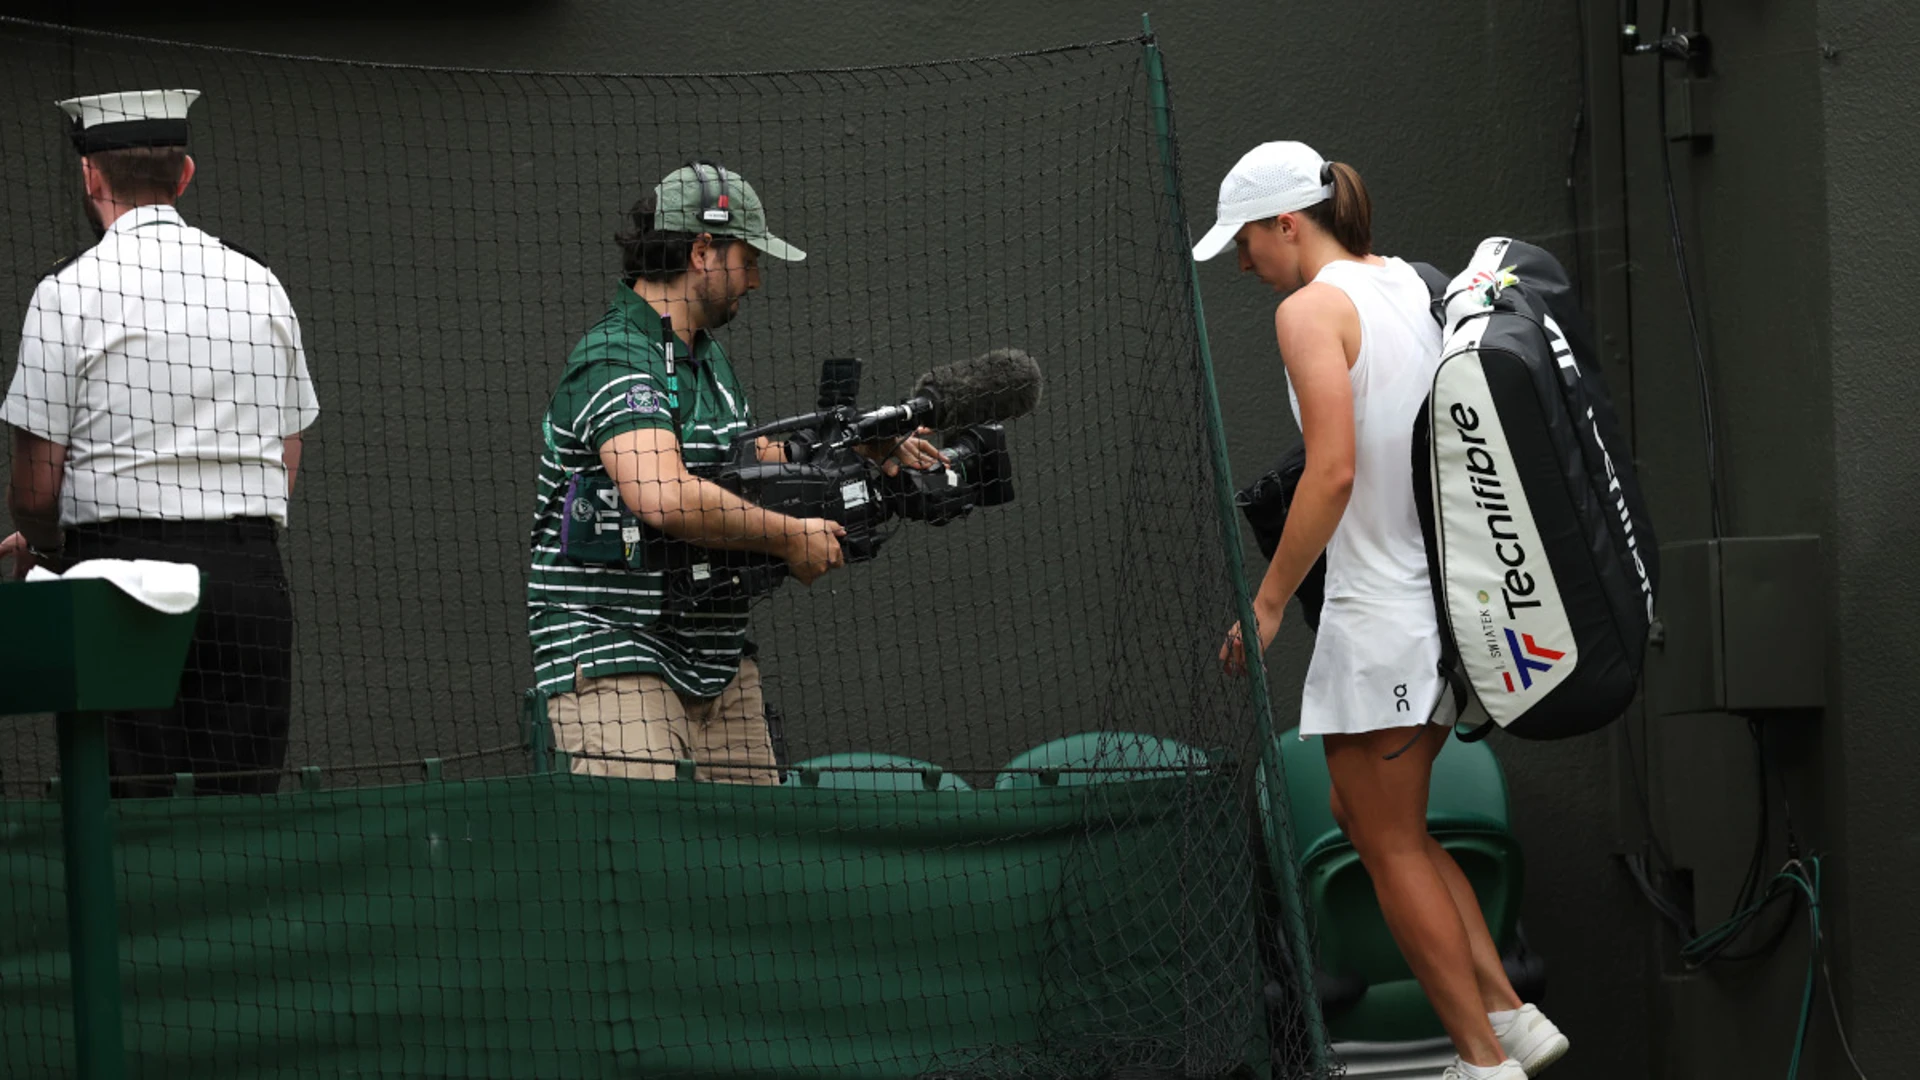 Swiatek crashes out at Wimbledon as Djokovic eyes sweet 16